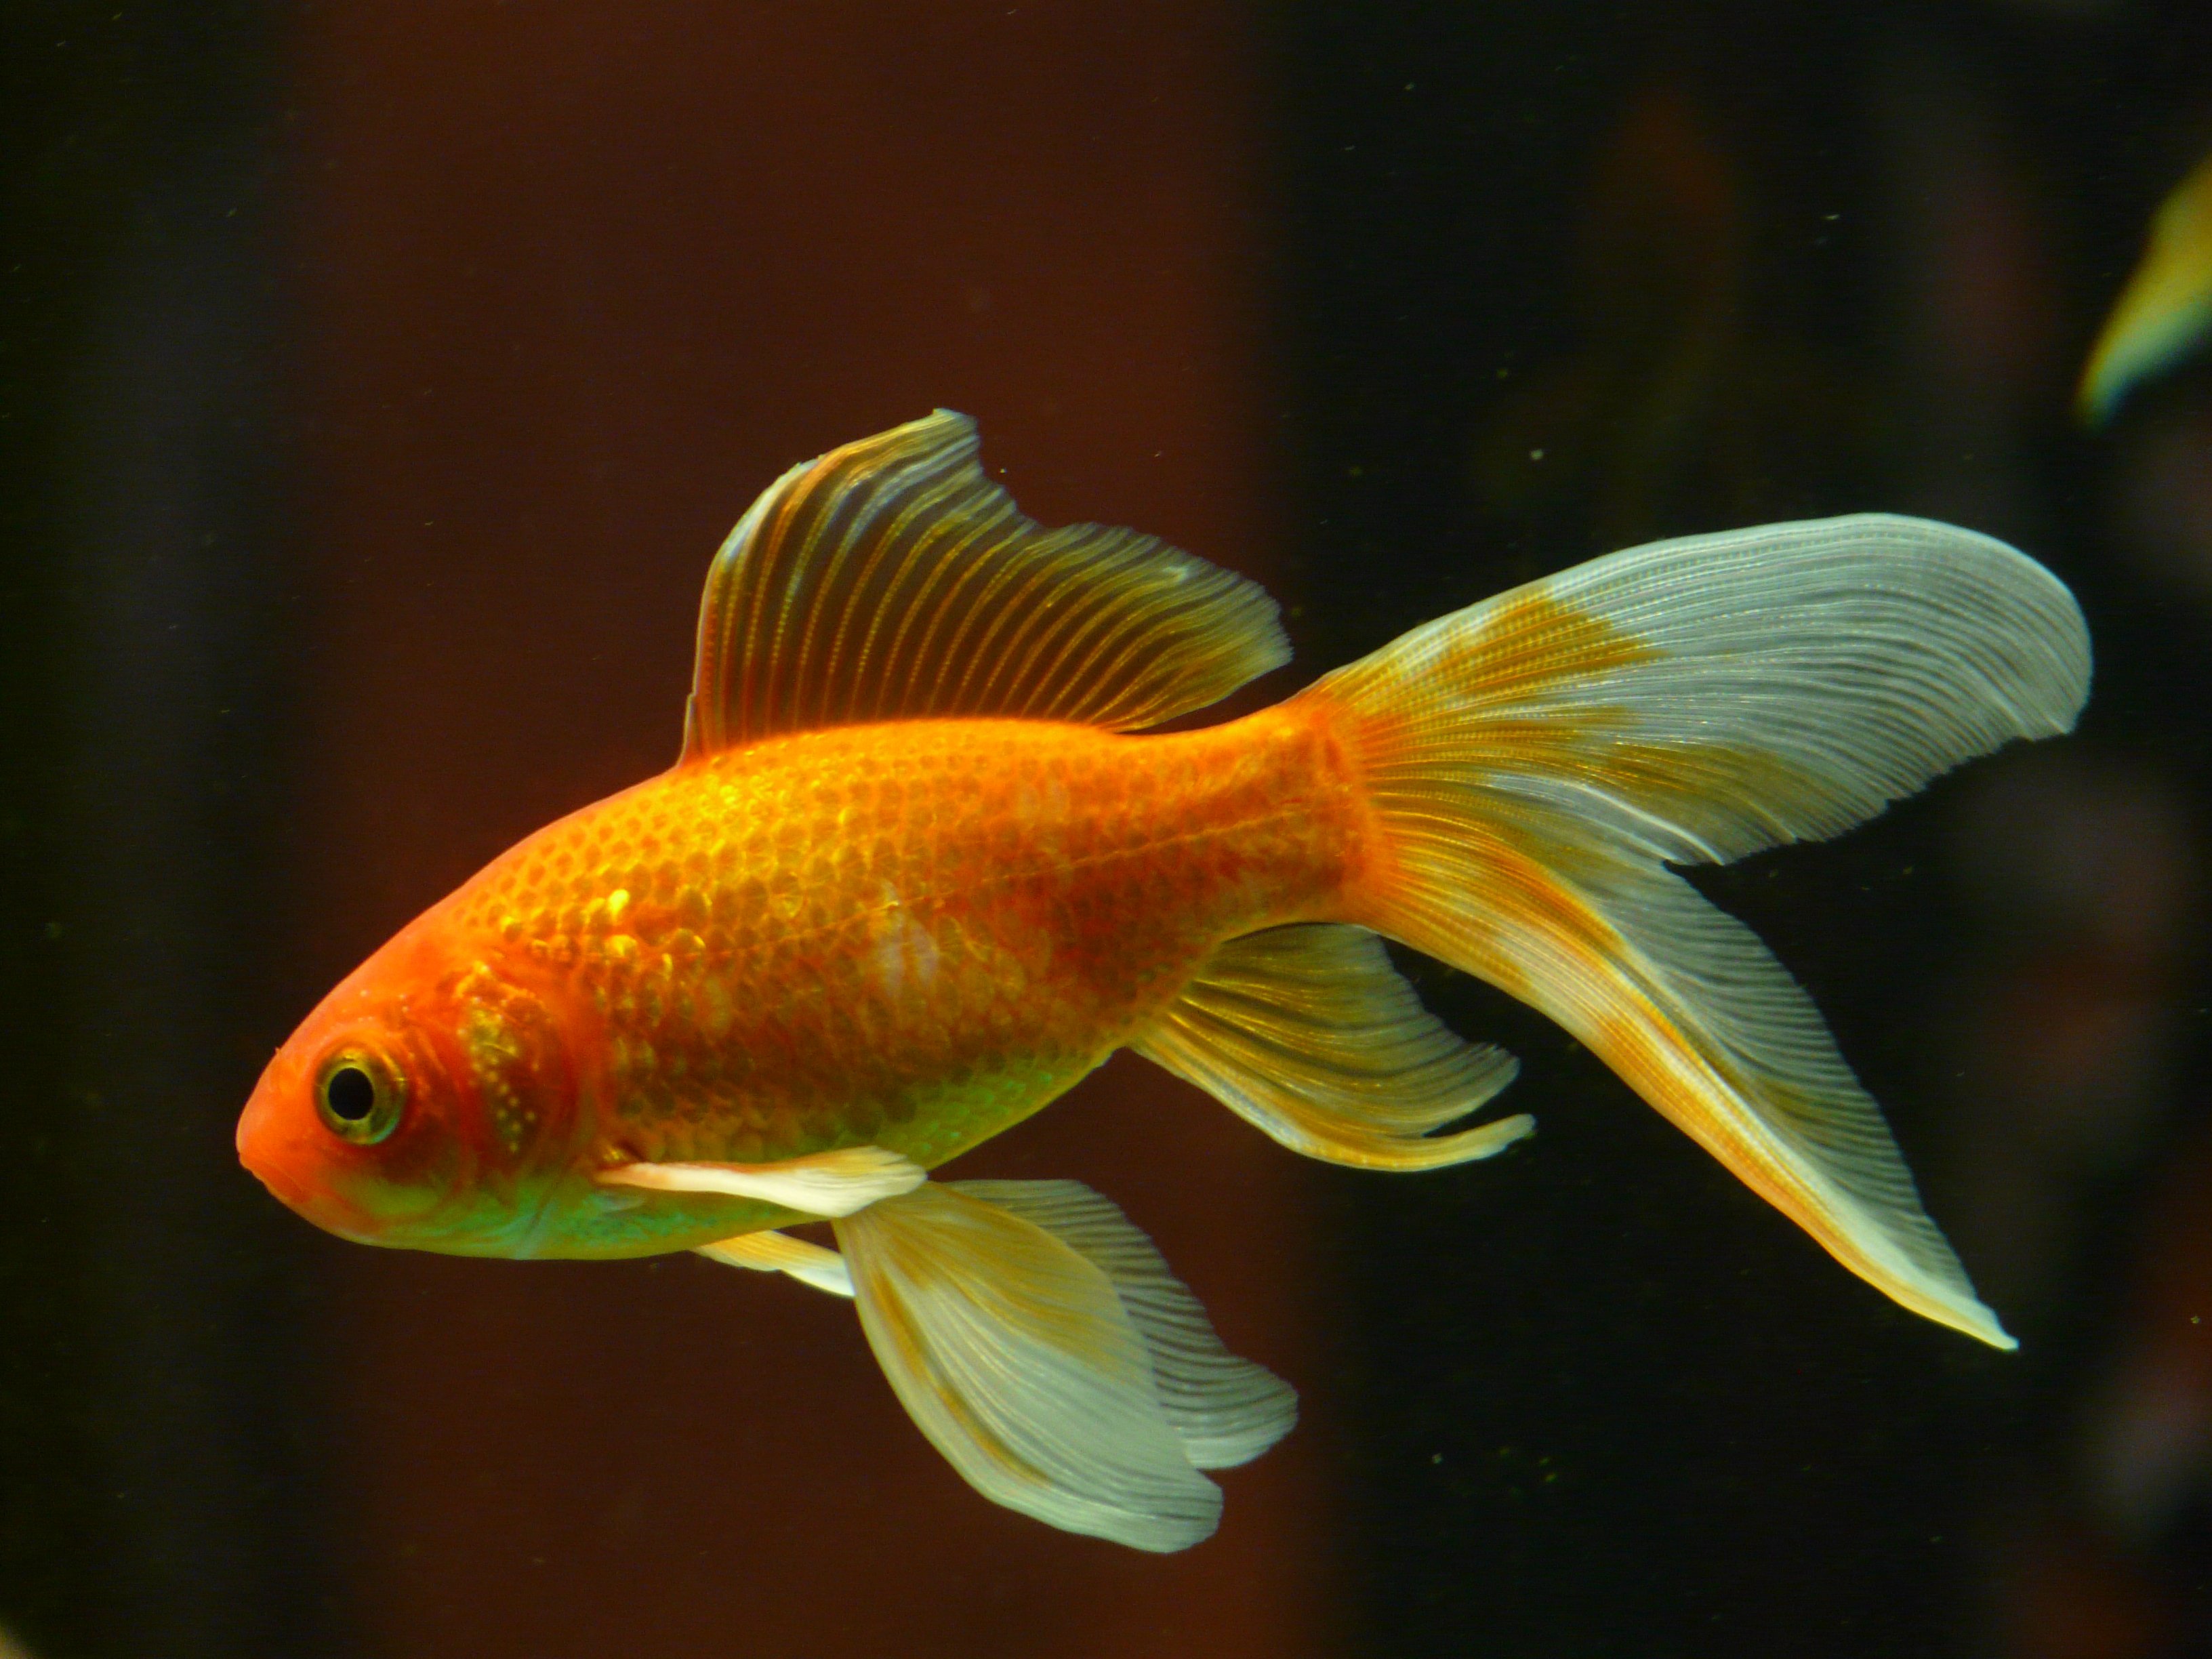 A little goldfish in an aquarium.